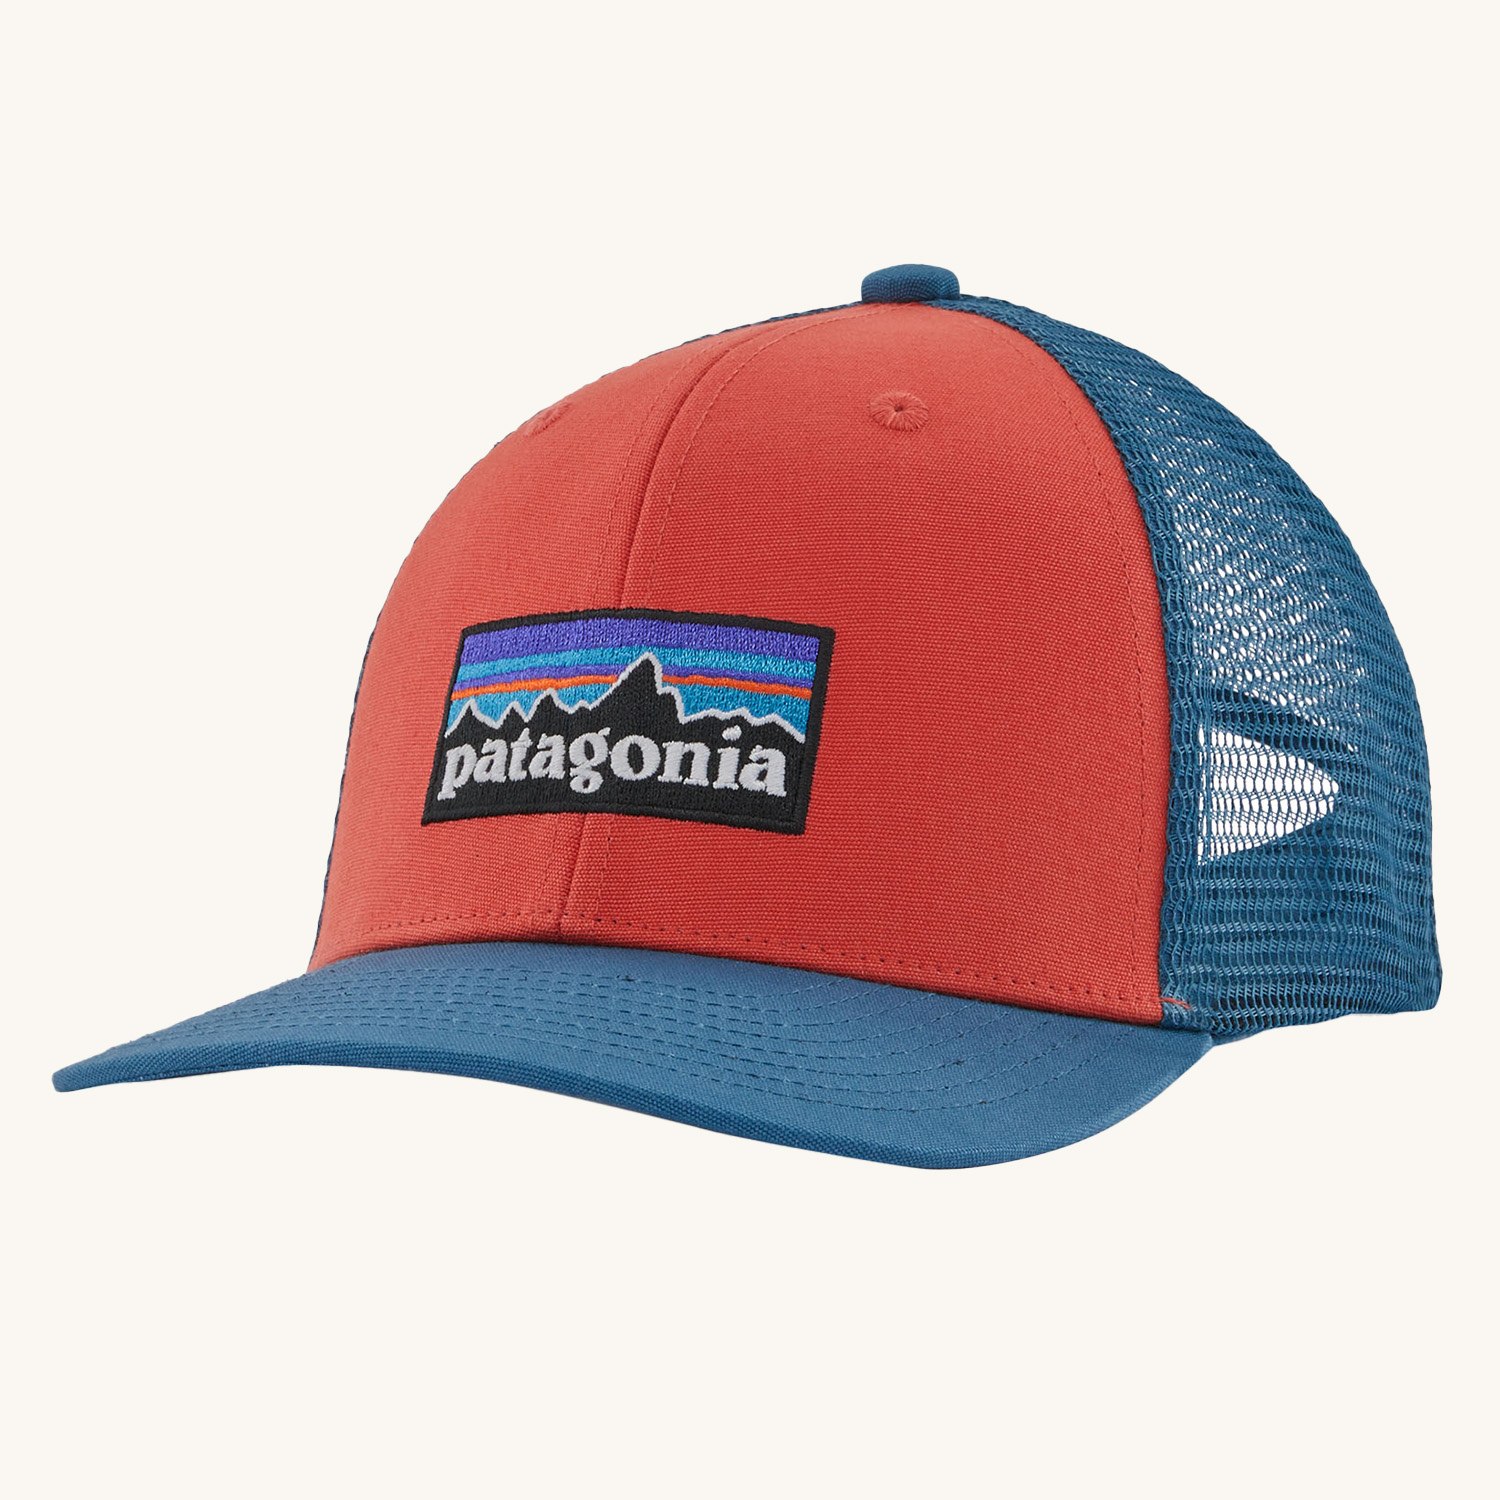 Patagonia Kids Trucker Hat Baseball Cap - P-6 Logo / Sumac Red